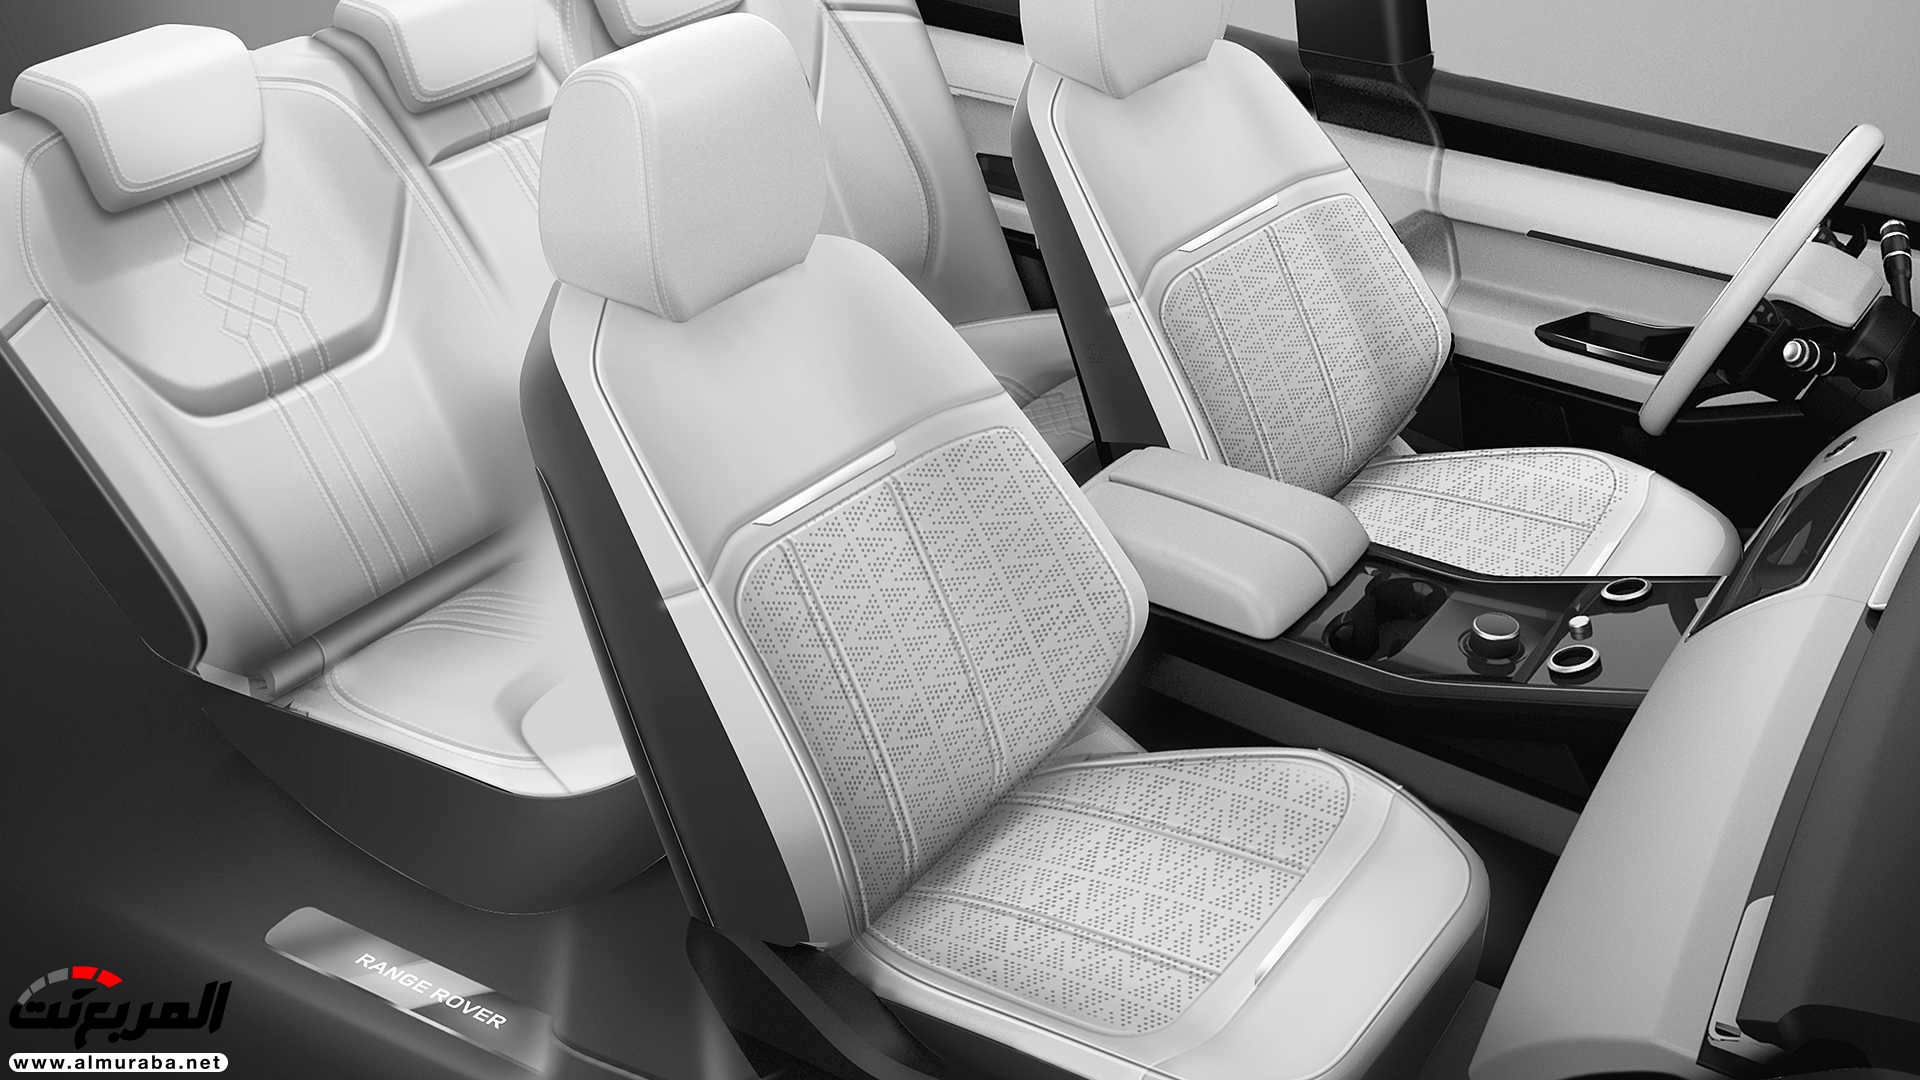 اهم 7 معلومات عن رنج روفر ايفوك 2020 الجديدة كلياً Range Rover Evoque 365